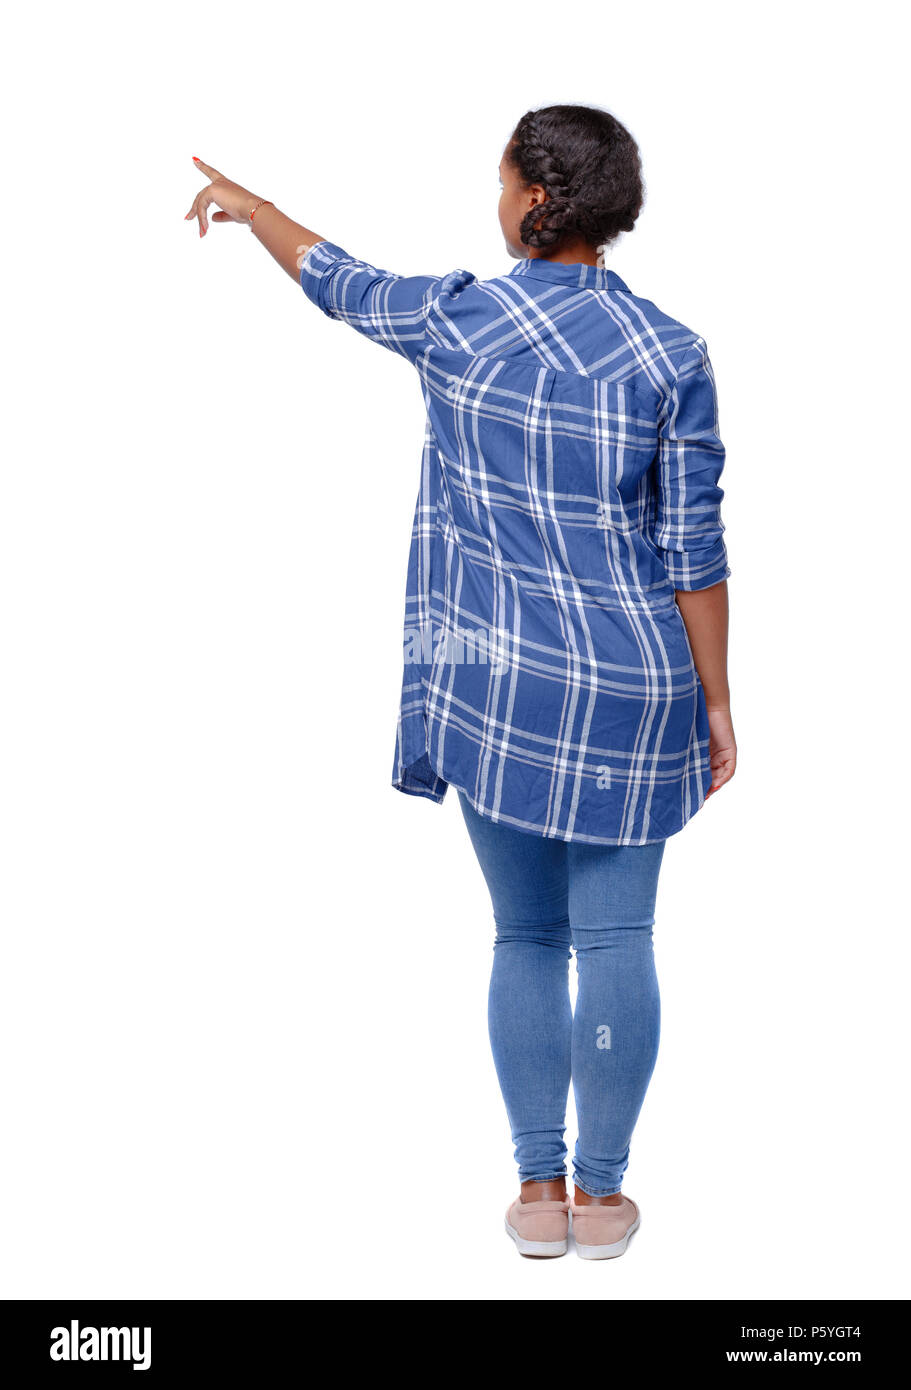 Rückansicht eines schwarzen Afrikaner - Frau in ein Hemd nach oben zeigt. Ansicht von hinten leute Sammlung. Rückseite Ansehen der Person. Über weiß b Isoliert Stockfoto